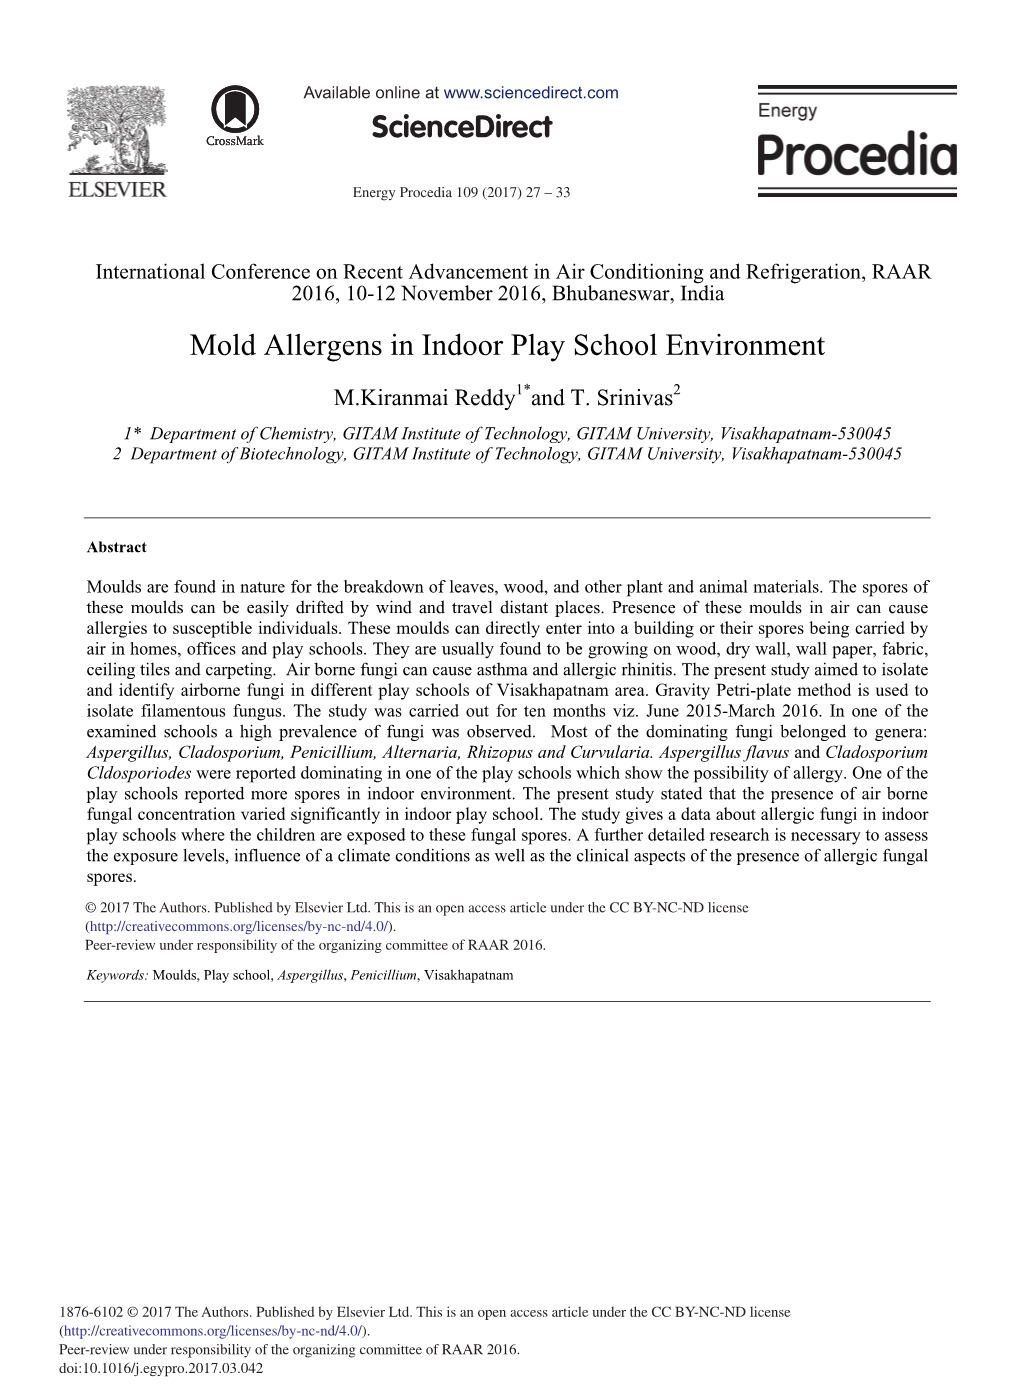 Mold Allergens in Indoor Play School Environment